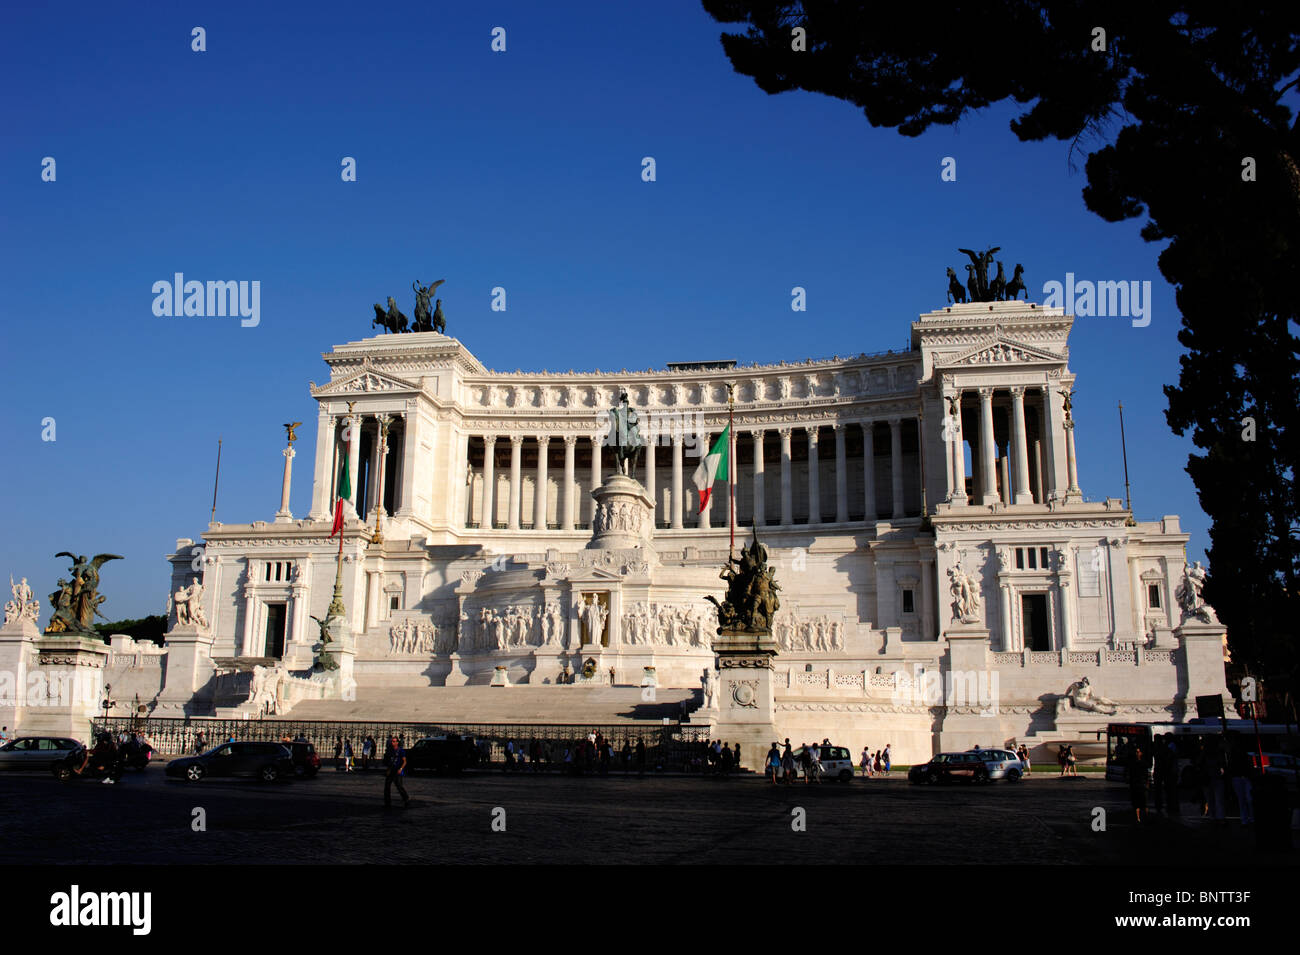 Italia, Roma, Piazza Venezia, vittoriano Foto de stock